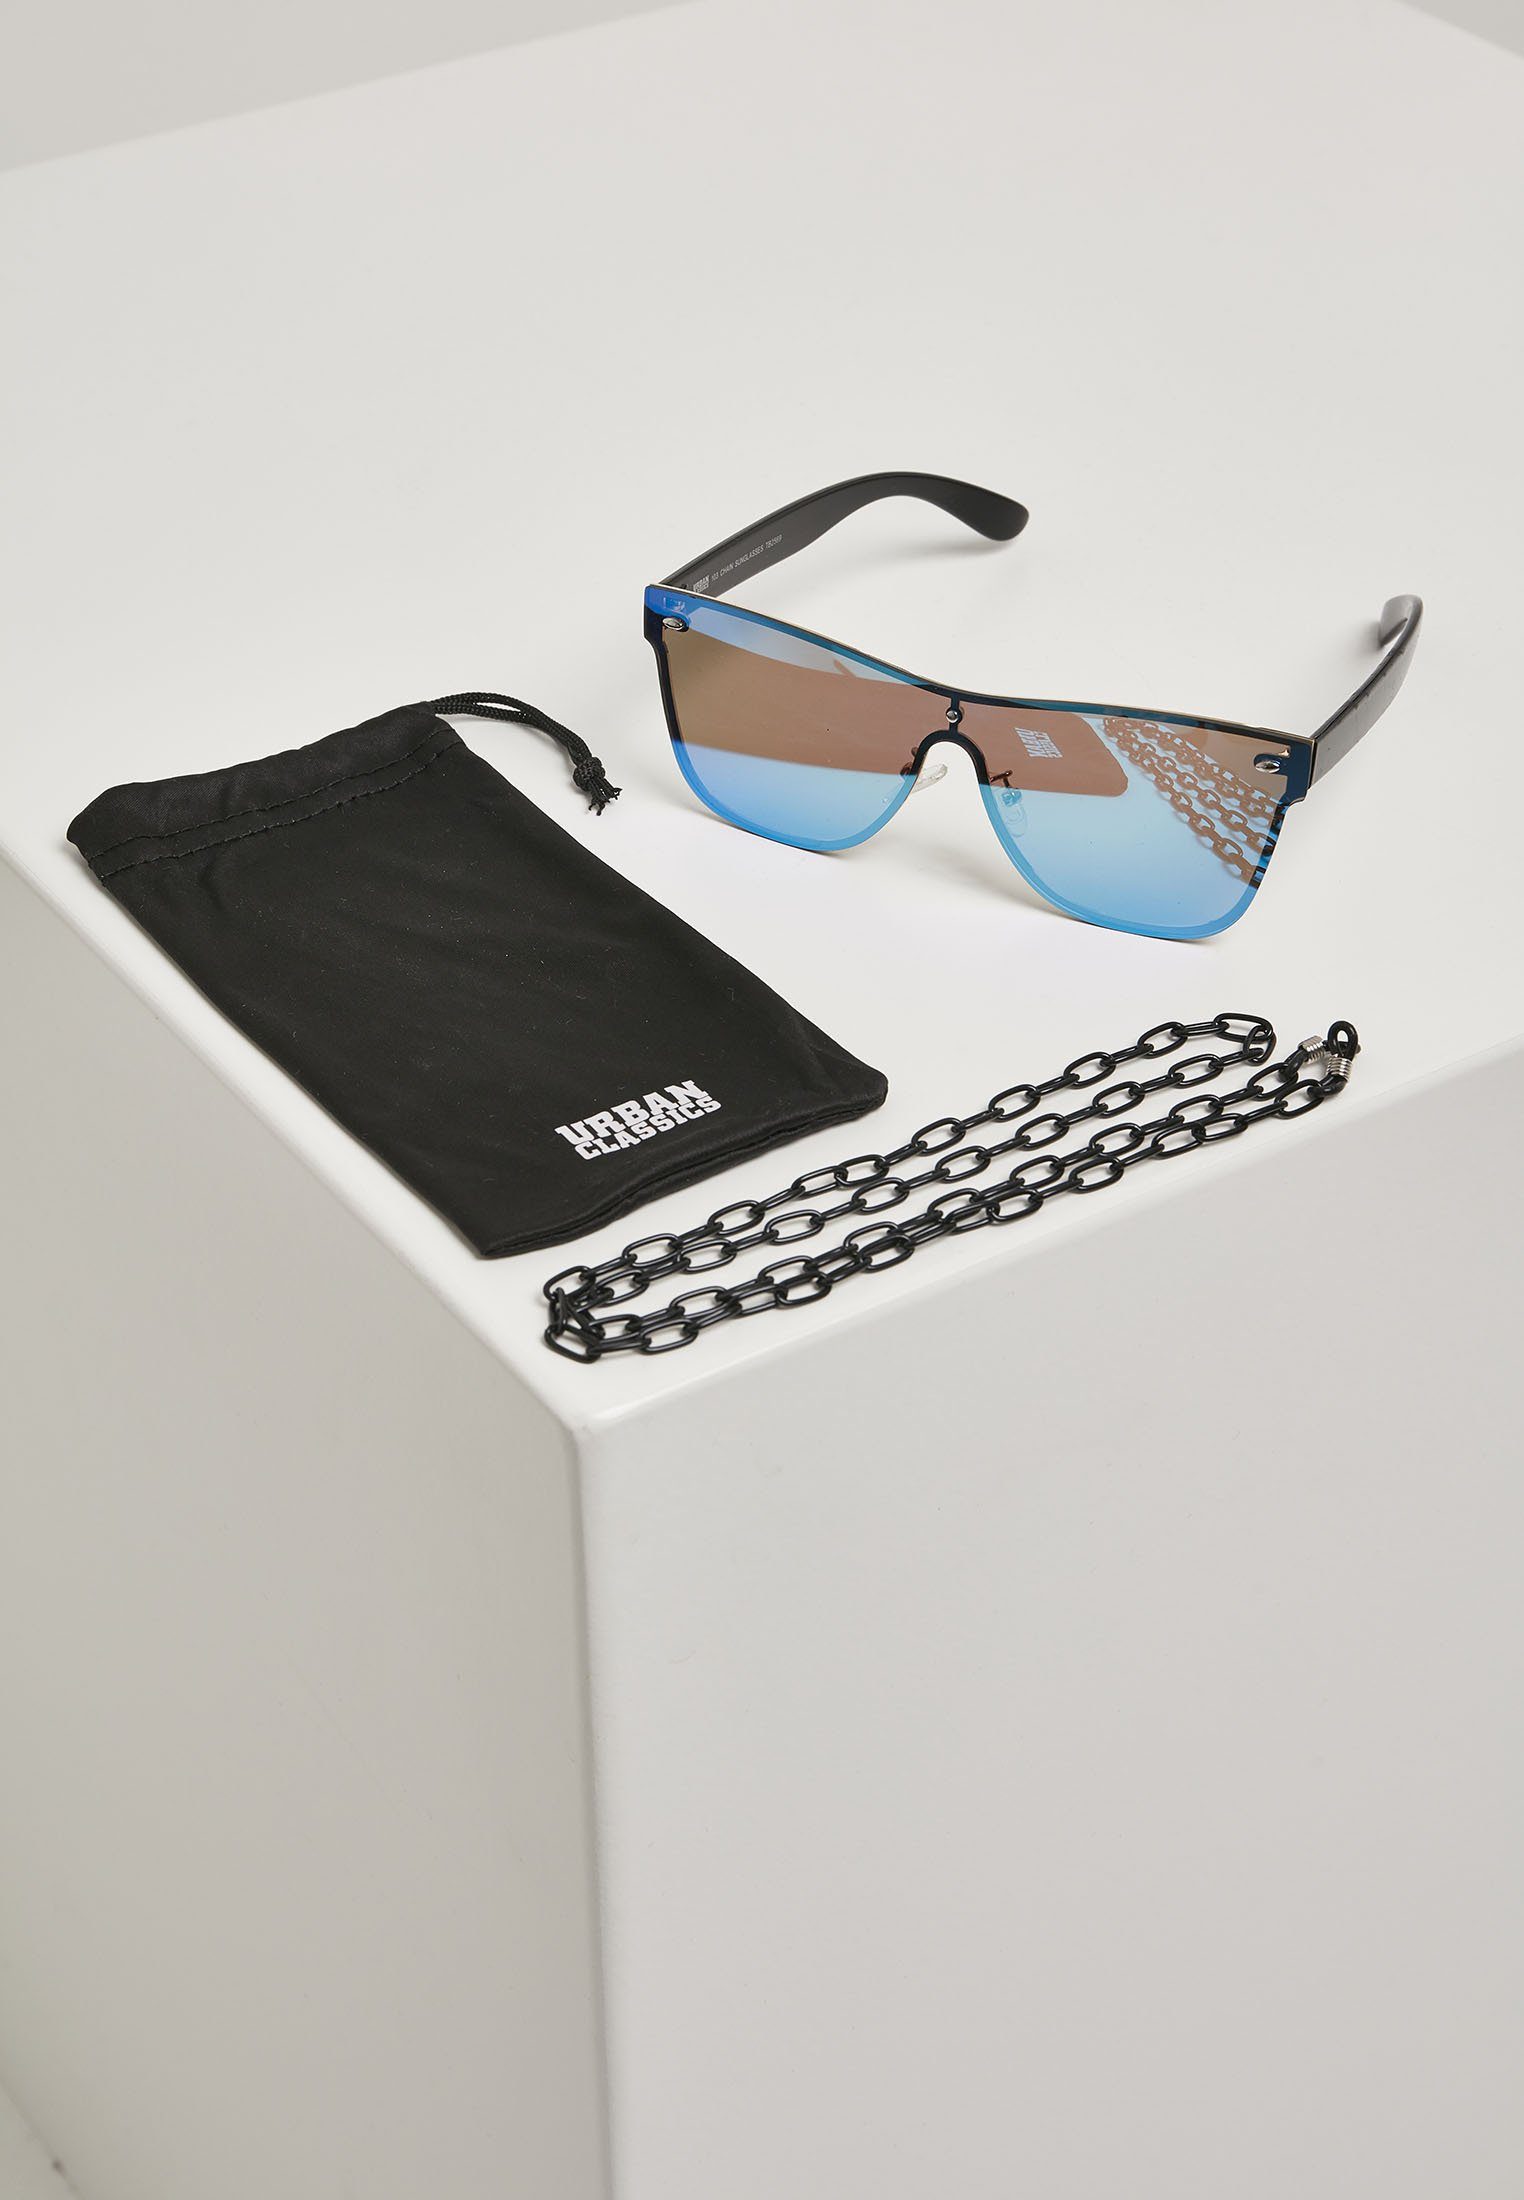 Neuer direkt geführter Store! URBAN CLASSICS Sonnenbrille Unisex 103 blk/blue Chain Sunglasses